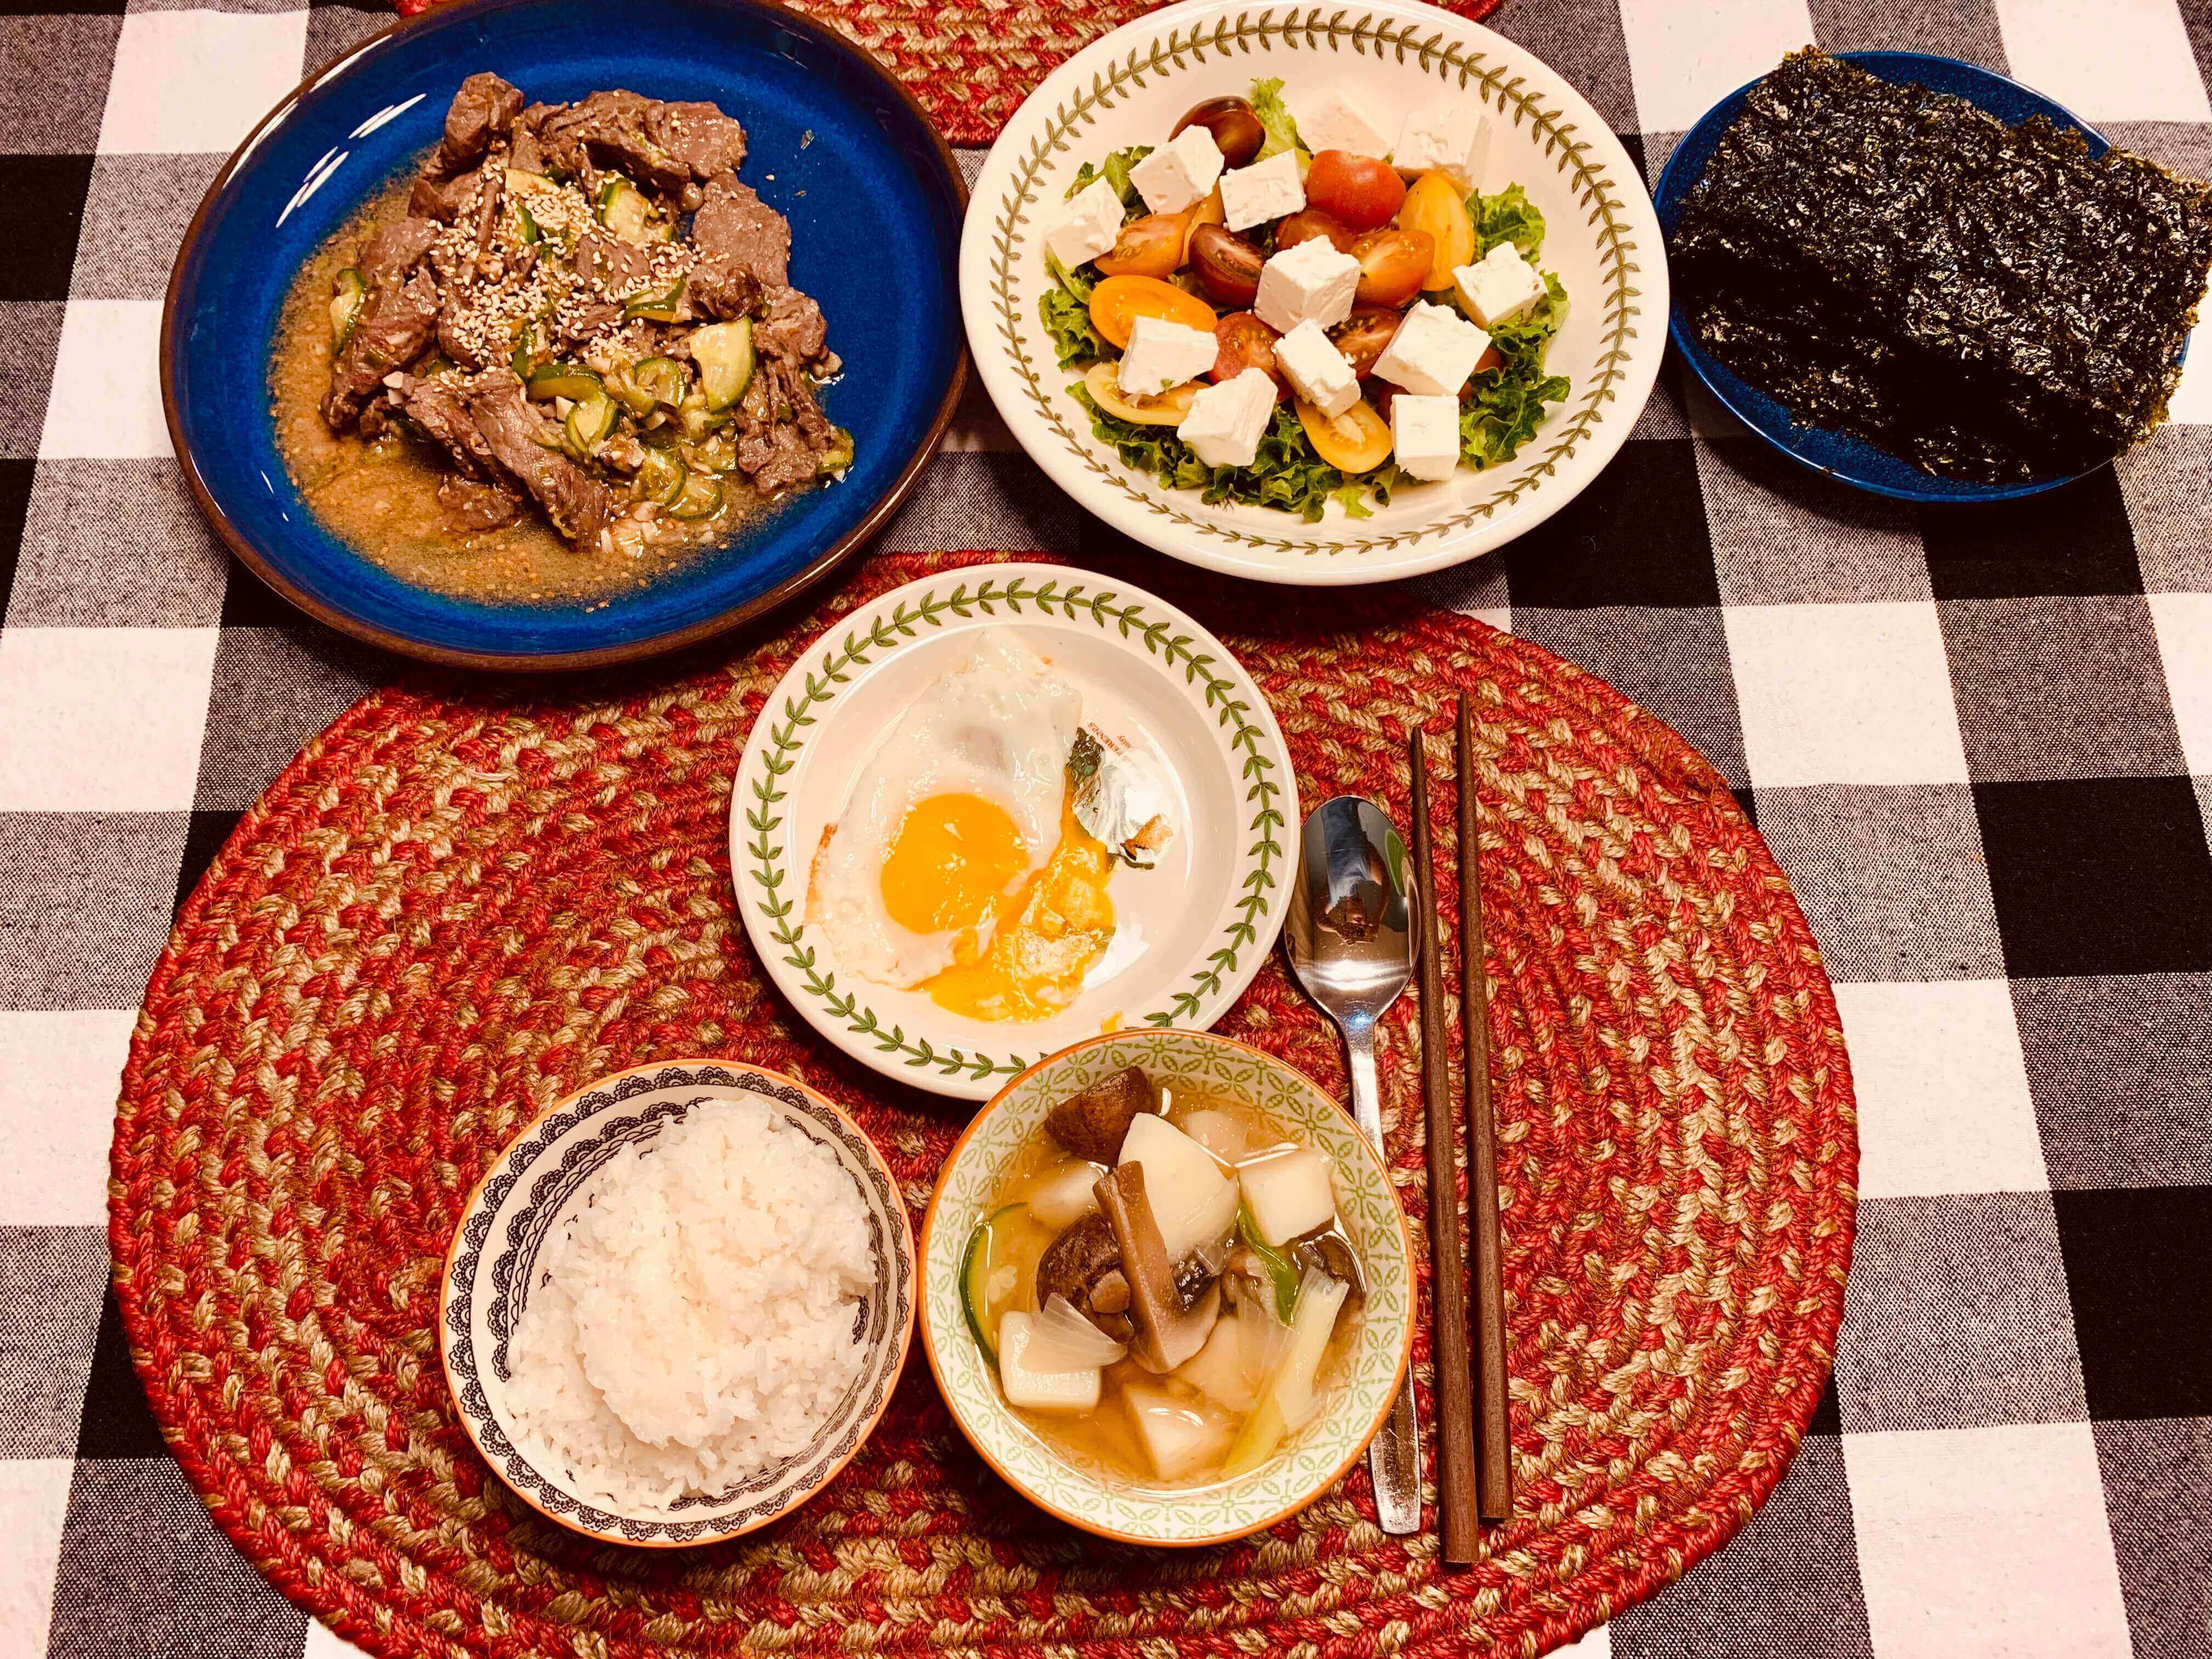 소불고기-토마토-치즈-샐러드-김-계란후라이-흰쌀밥-수저와-젓가락이-셋팅된-식탁-모습